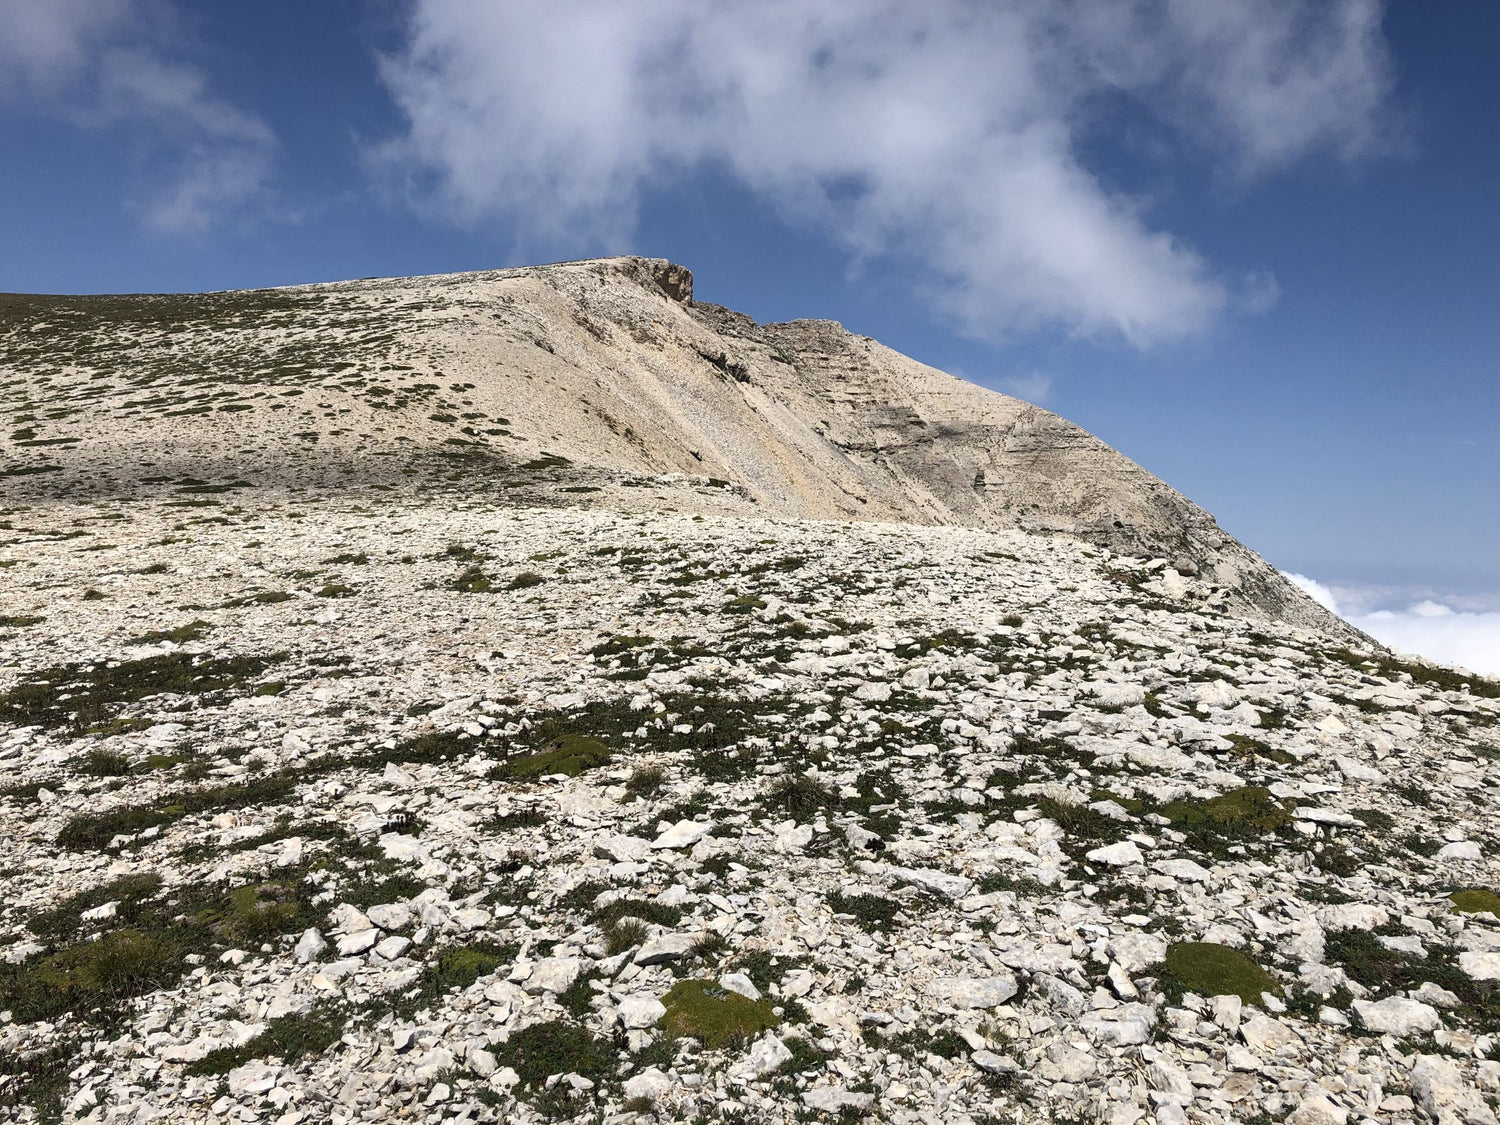 Climbing the Majella Peaks by Carmine de Grandis